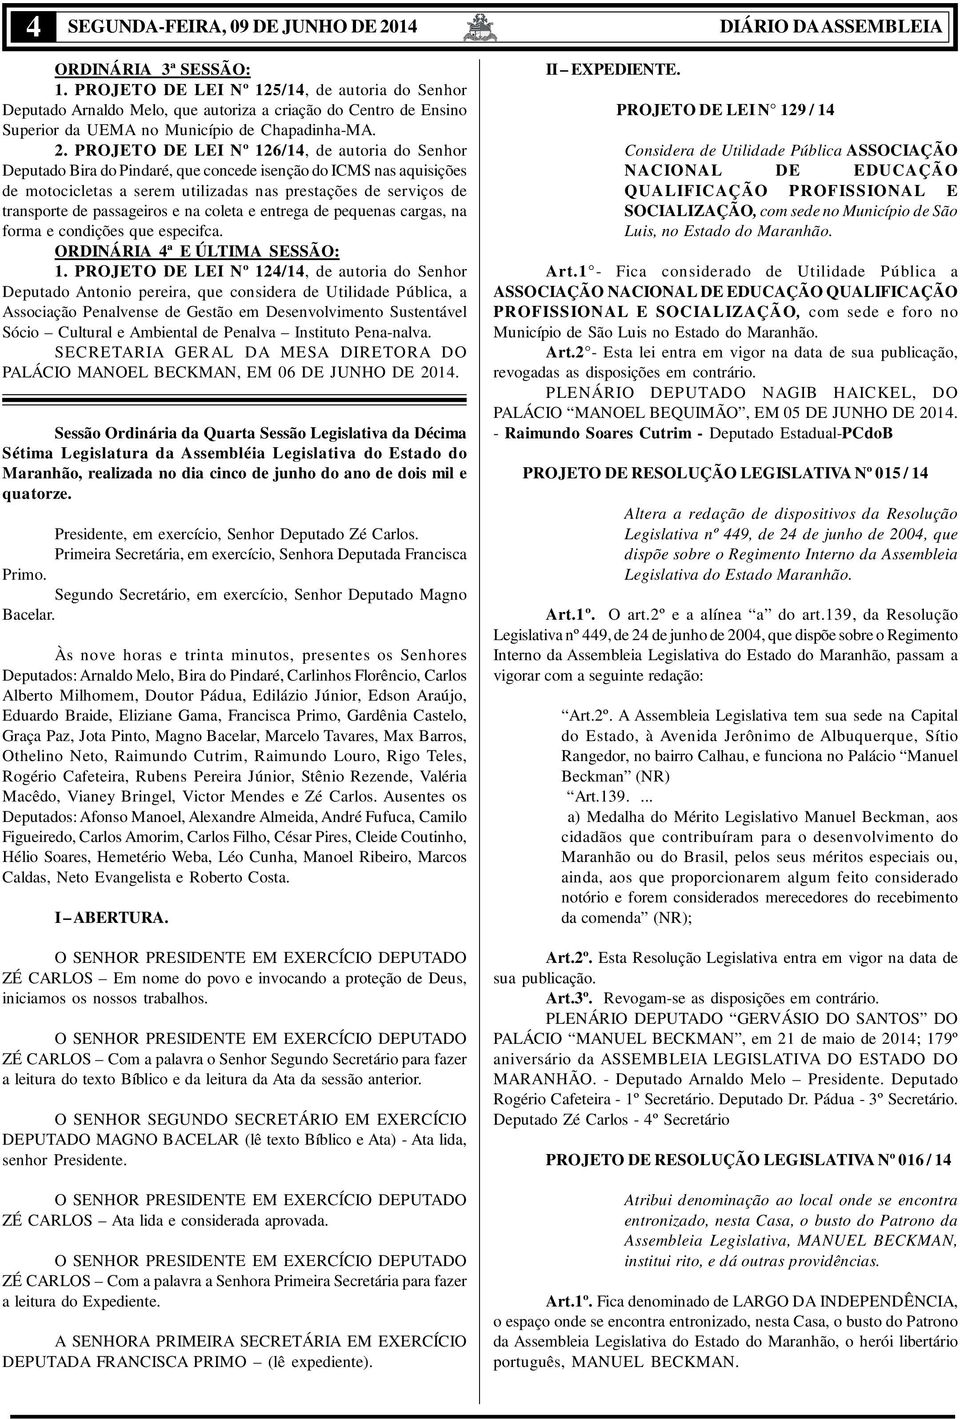 PROJETO DE LEI Nº 126/14, de autoria do Senhor Deputado Bira do Pindaré, que concede isenção do ICMS nas aquisições de motocicletas a serem utilizadas nas prestações de serviços de transporte de